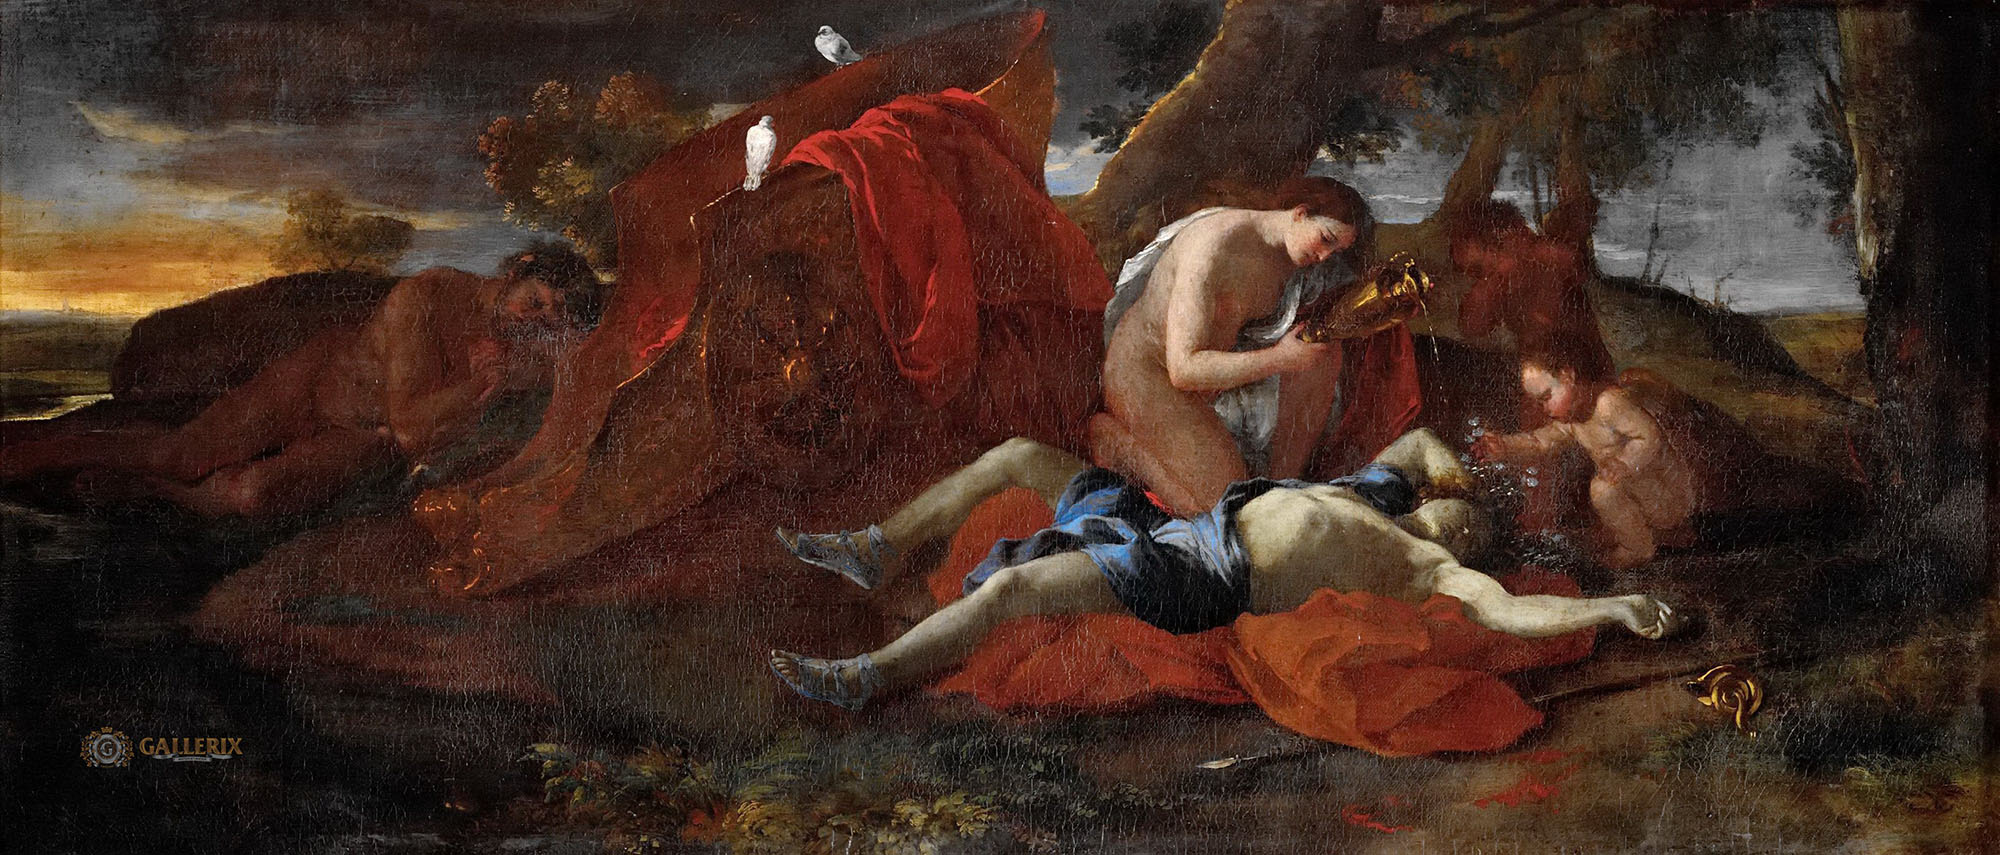 Никола Пуссен. "Венера оплакивает смерть Адониса". Музей изобразительных искусств, Кан.